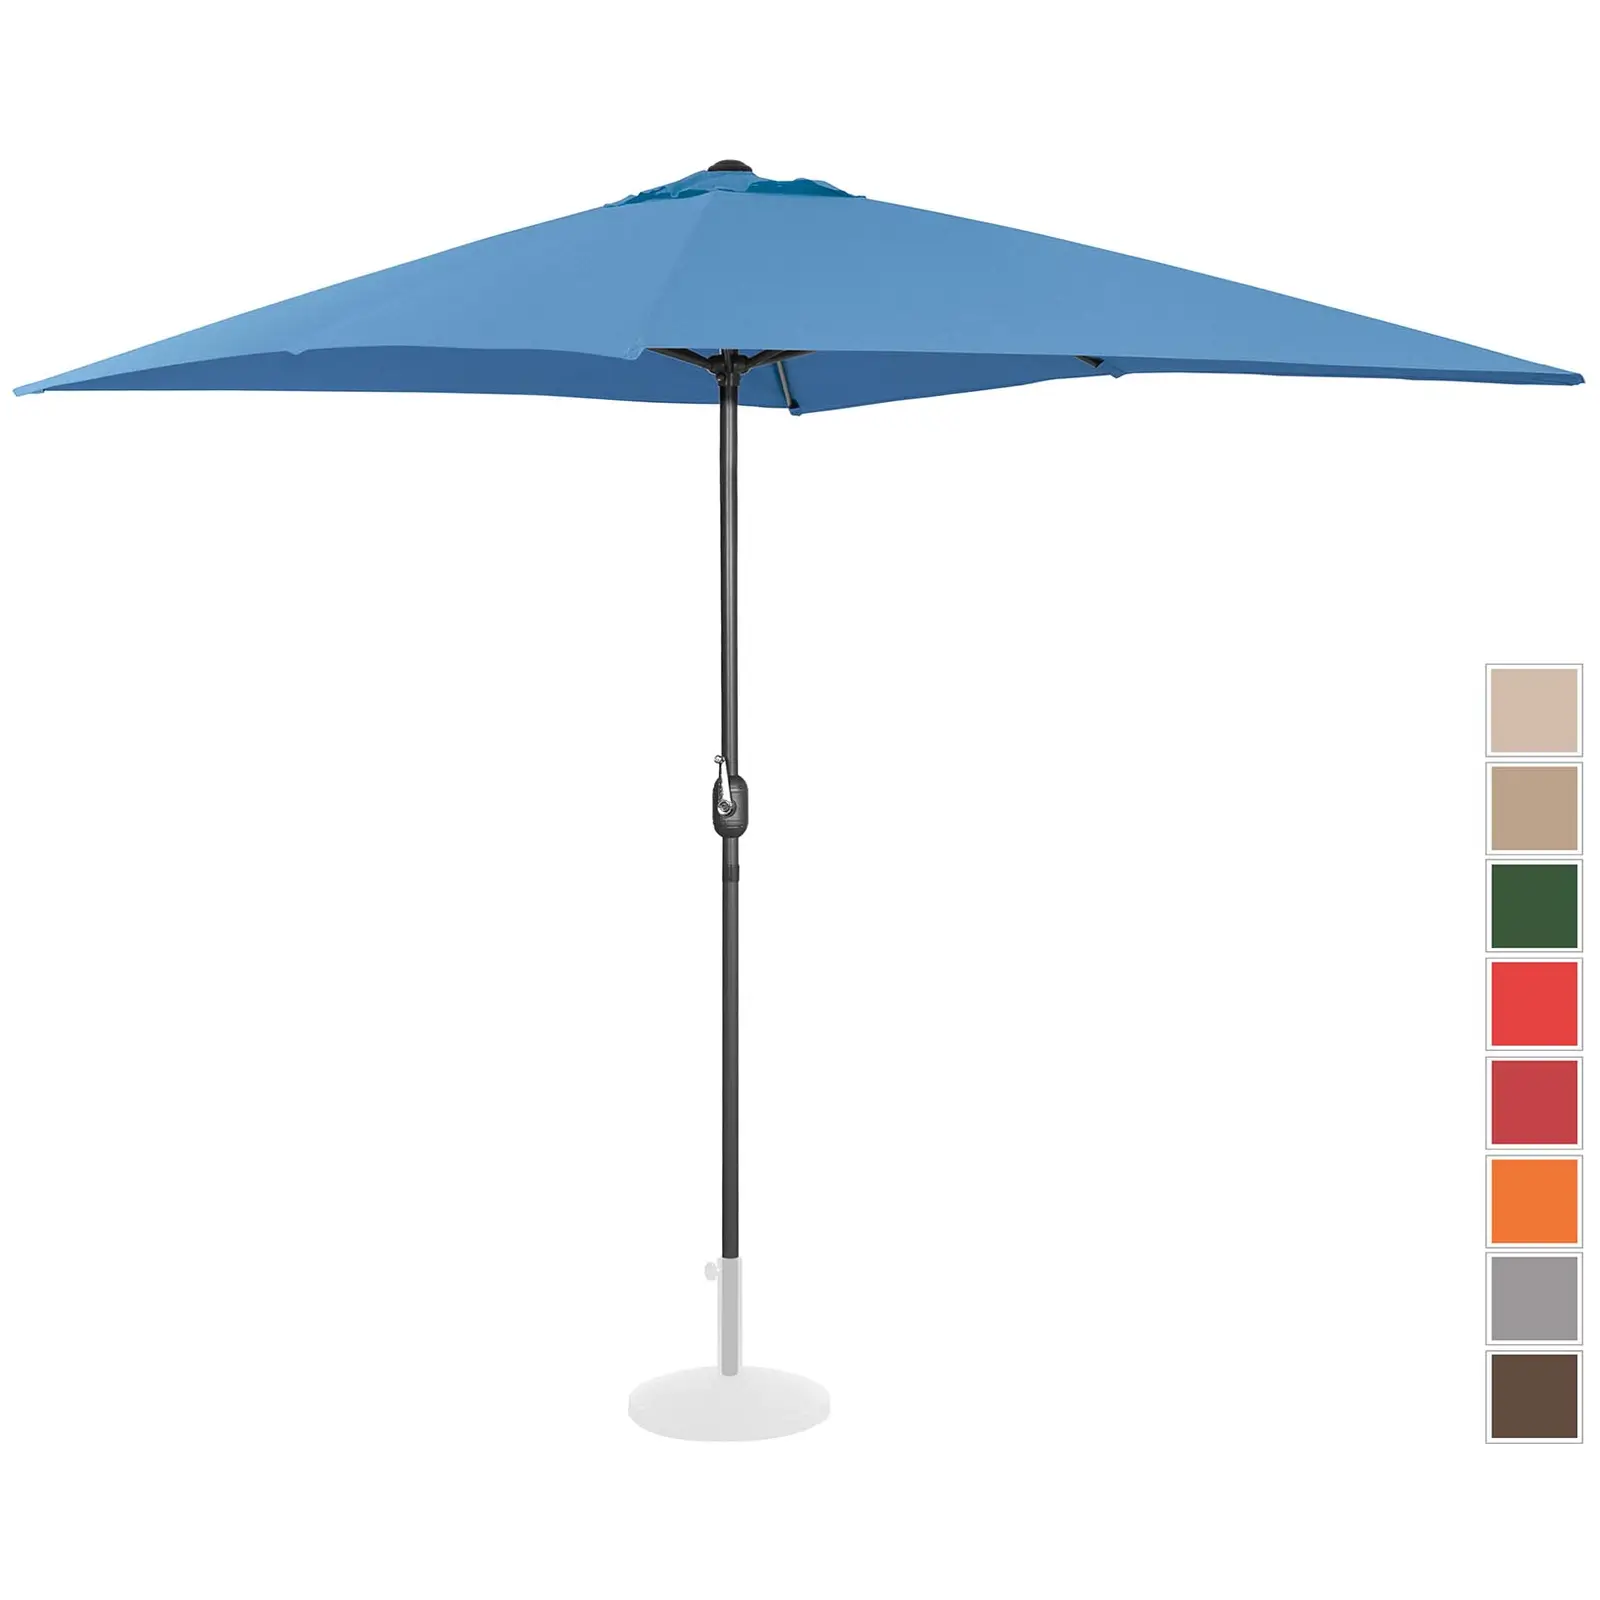 B-varer Stor parasoll - blå - rektangulær - 200 x 300 cm